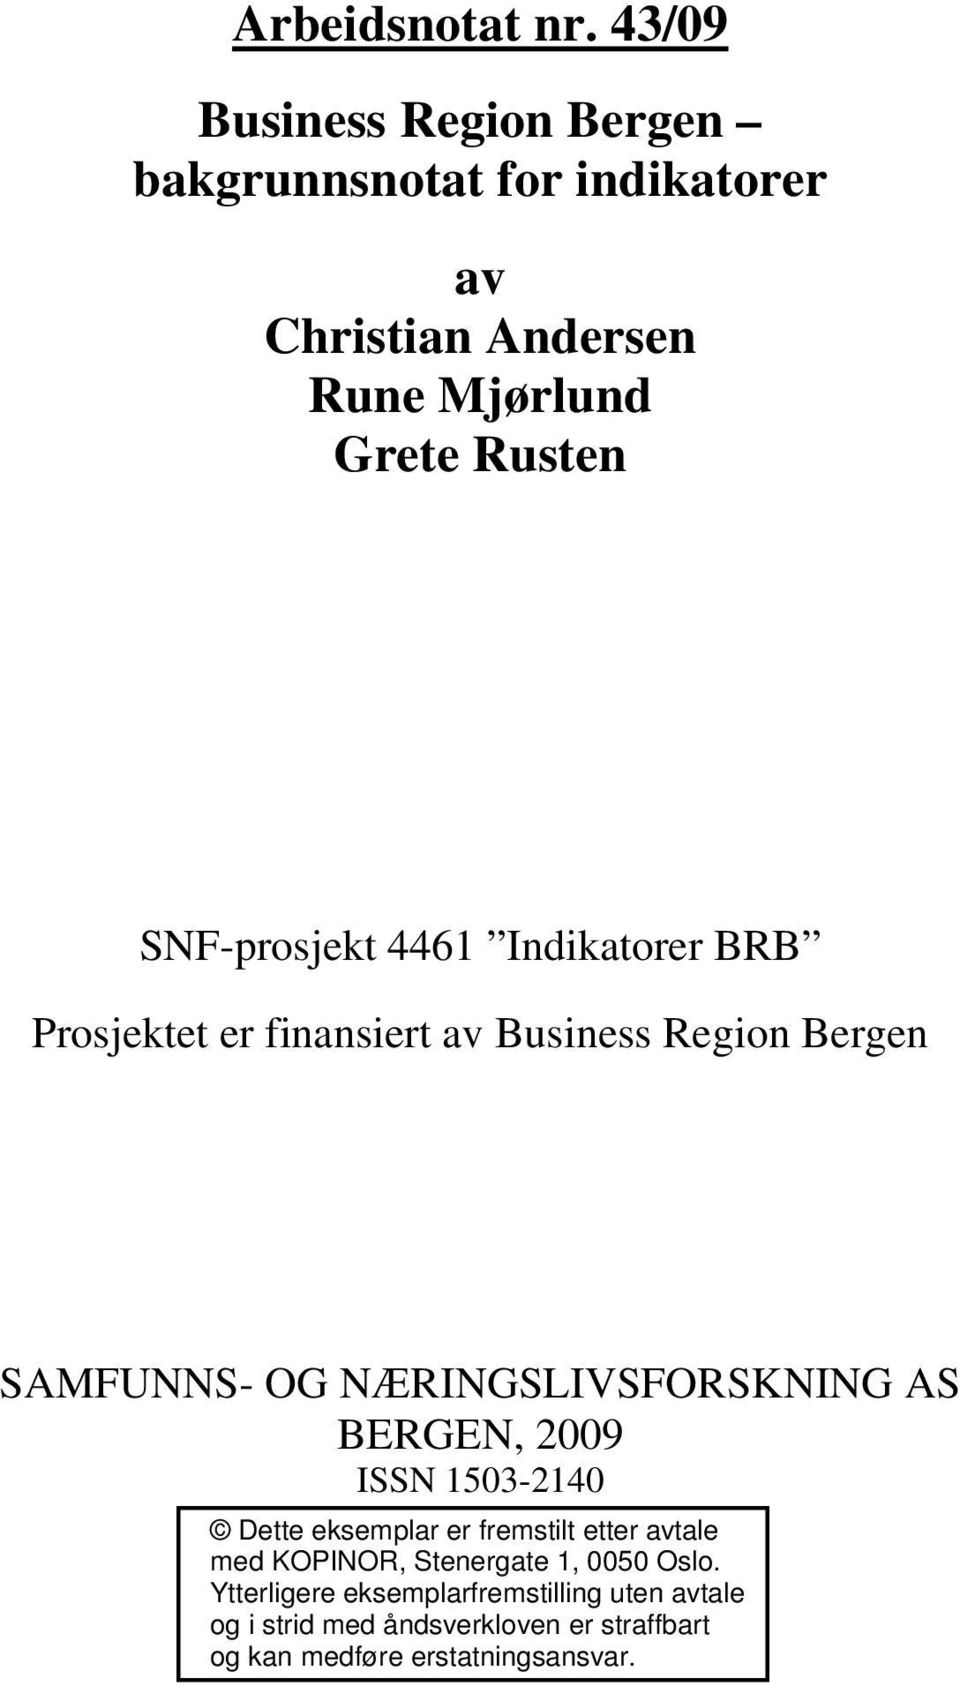 1503-2140 Dette eksemplar er fremstilt etter avtale med KOPINOR, Stenergate 1, 0050 Oslo.